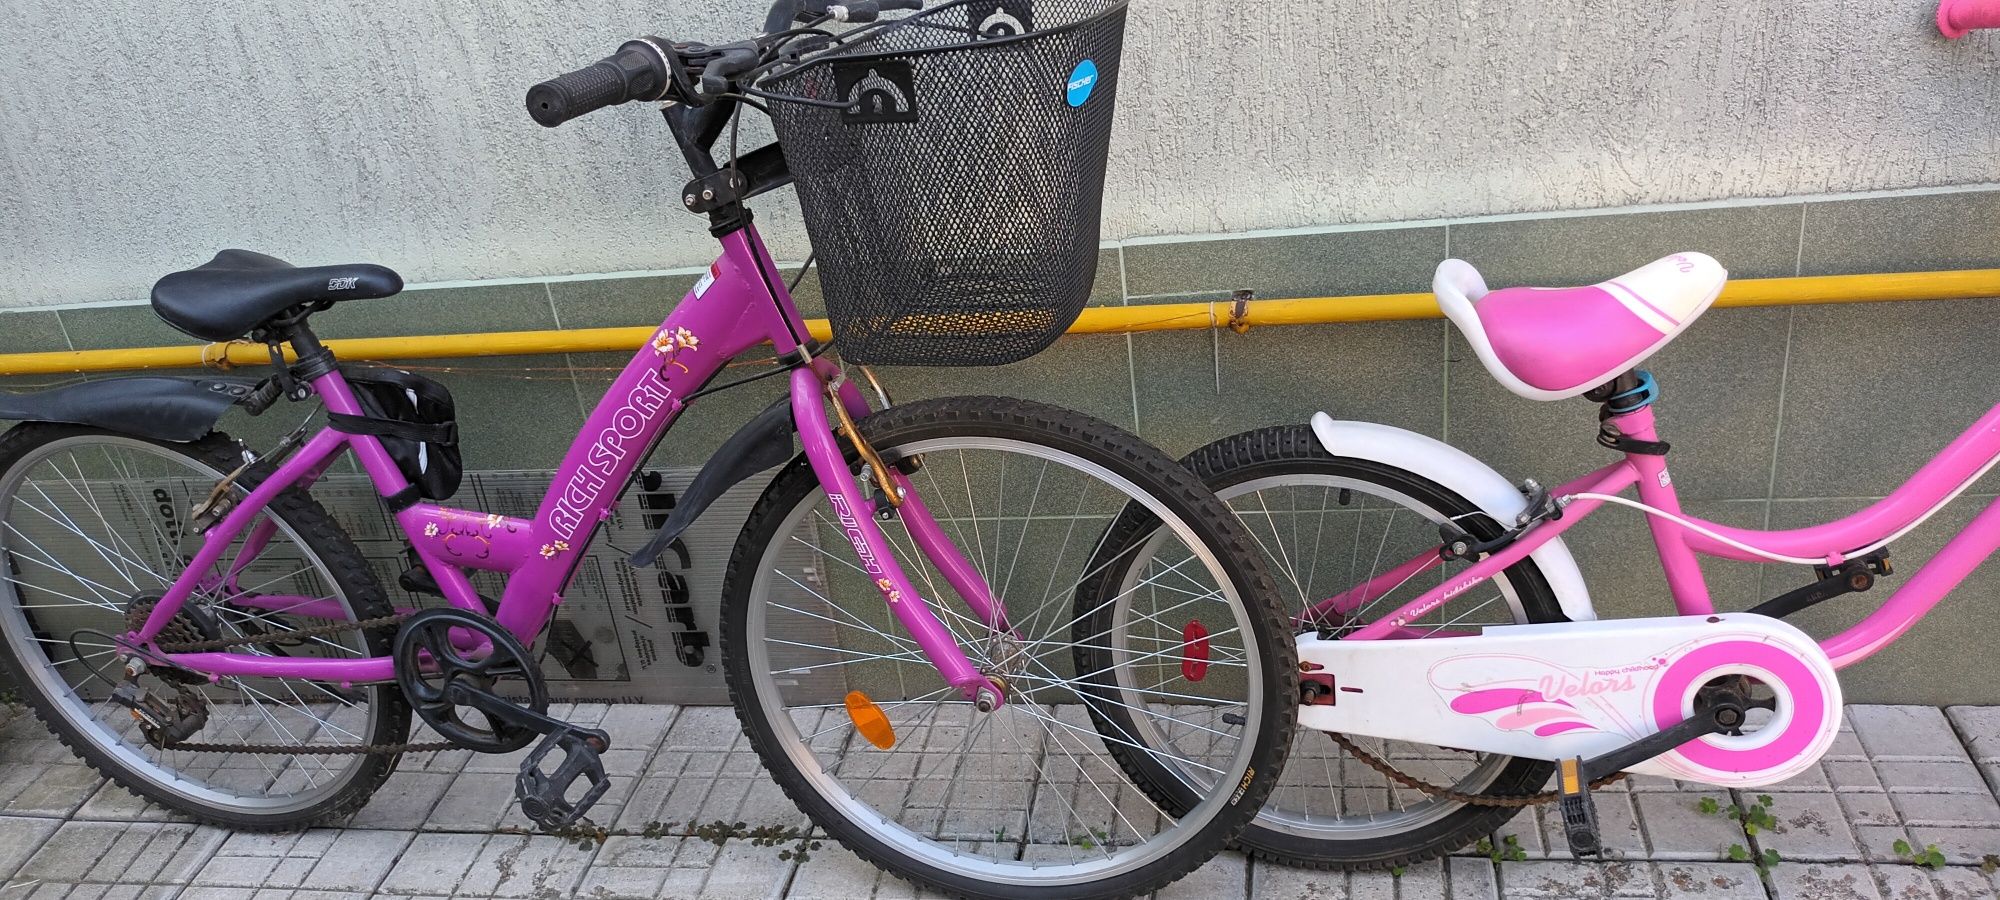 Biciclete pentru fete (a mai rămas doar una, cea mare)